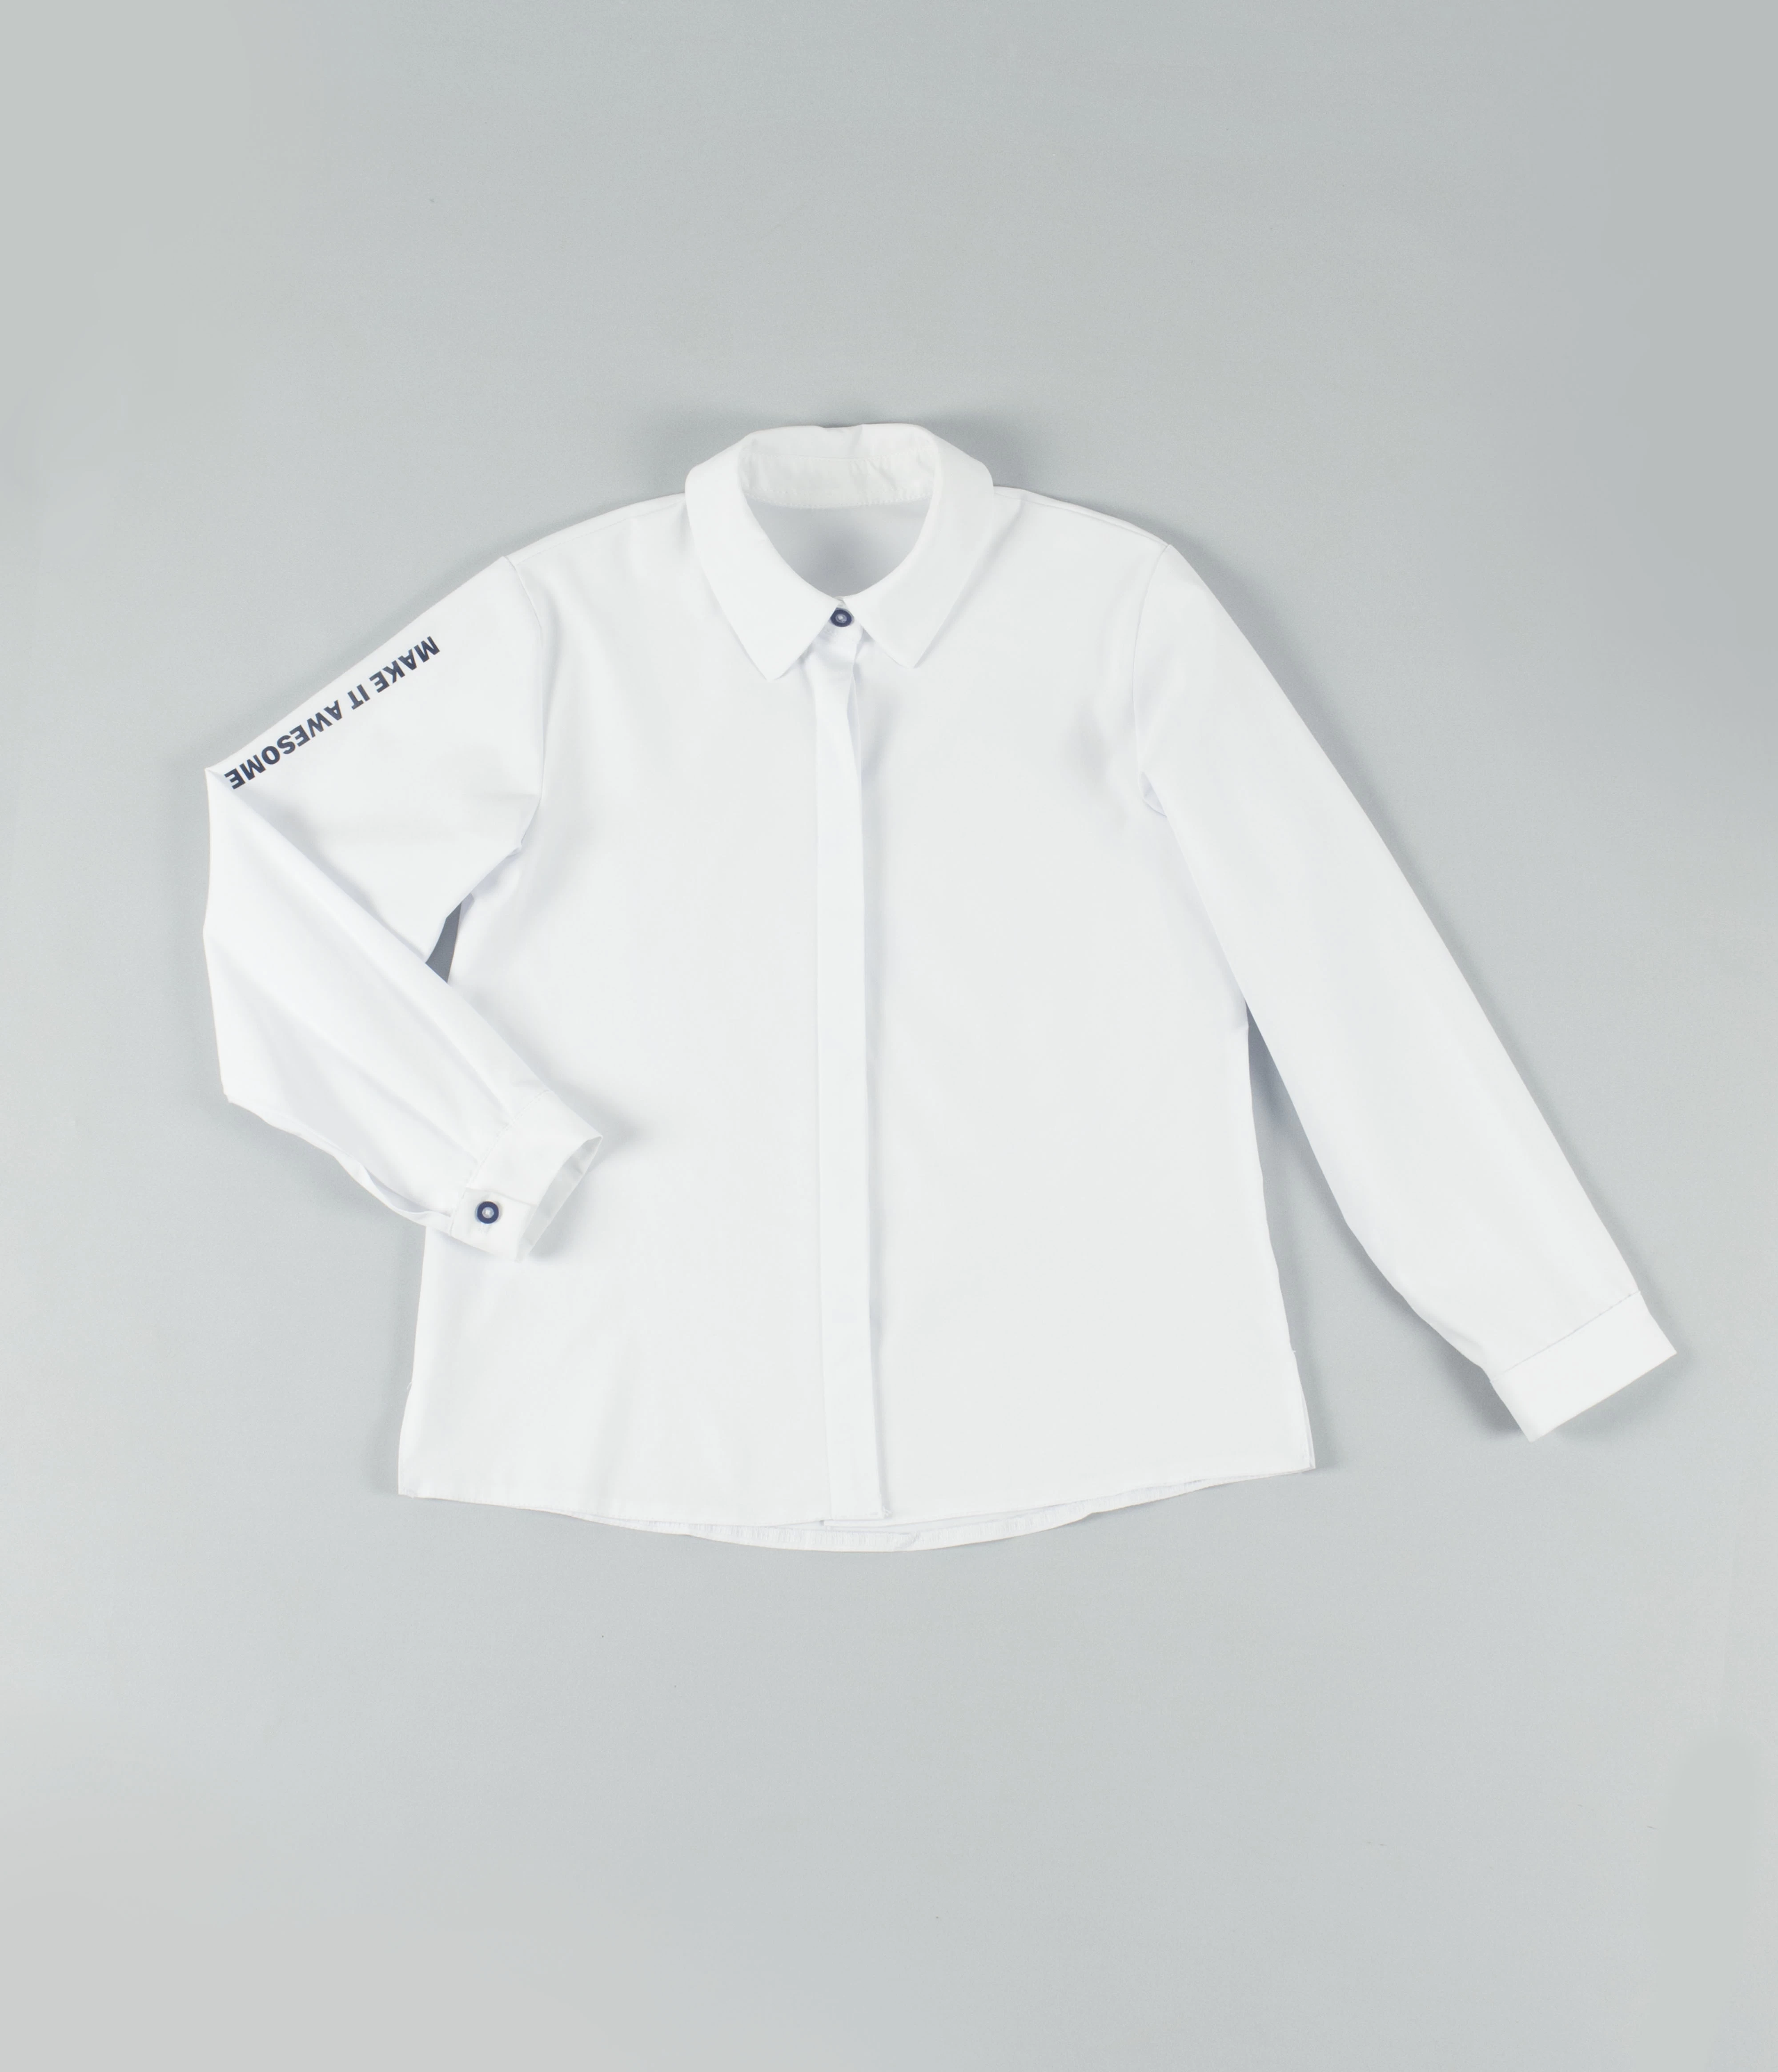 Белая блузка с надписью на рукаве для девочек в школу. Купить белая блузкас надписью на рукаве выгодно в Лицейстиль